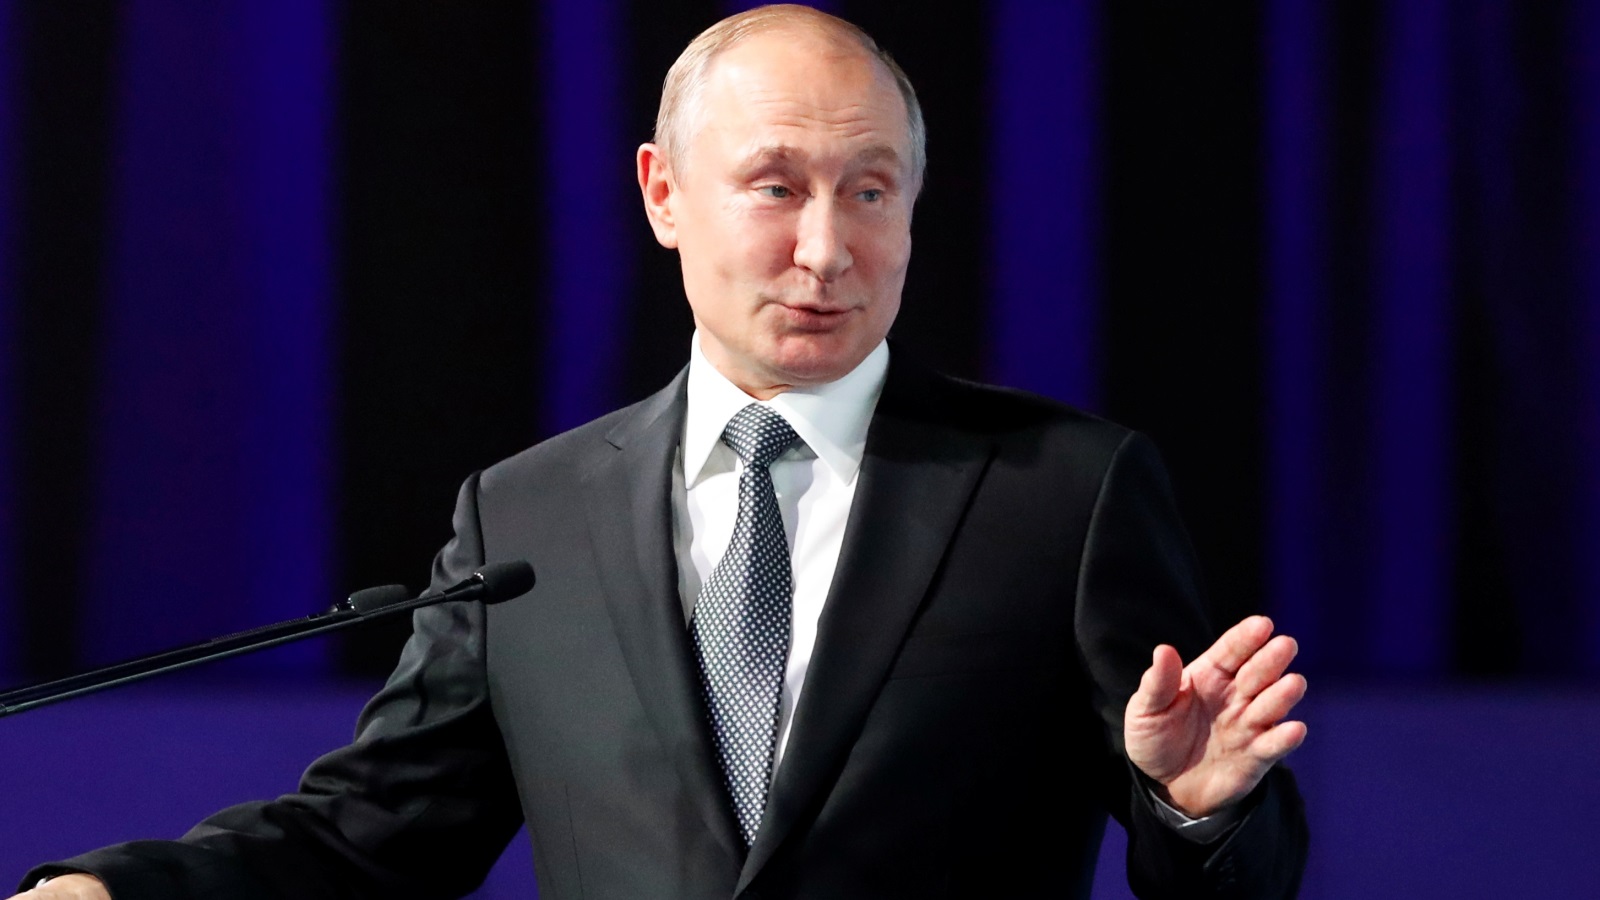 وفقا لتصريحات الرئيس الروسي فلاديمير بوتين العام الماضي، فإن 10% من استثمارات الحكومة الروسية في الوقت الراهن تذهب إلى القطب الشمالي